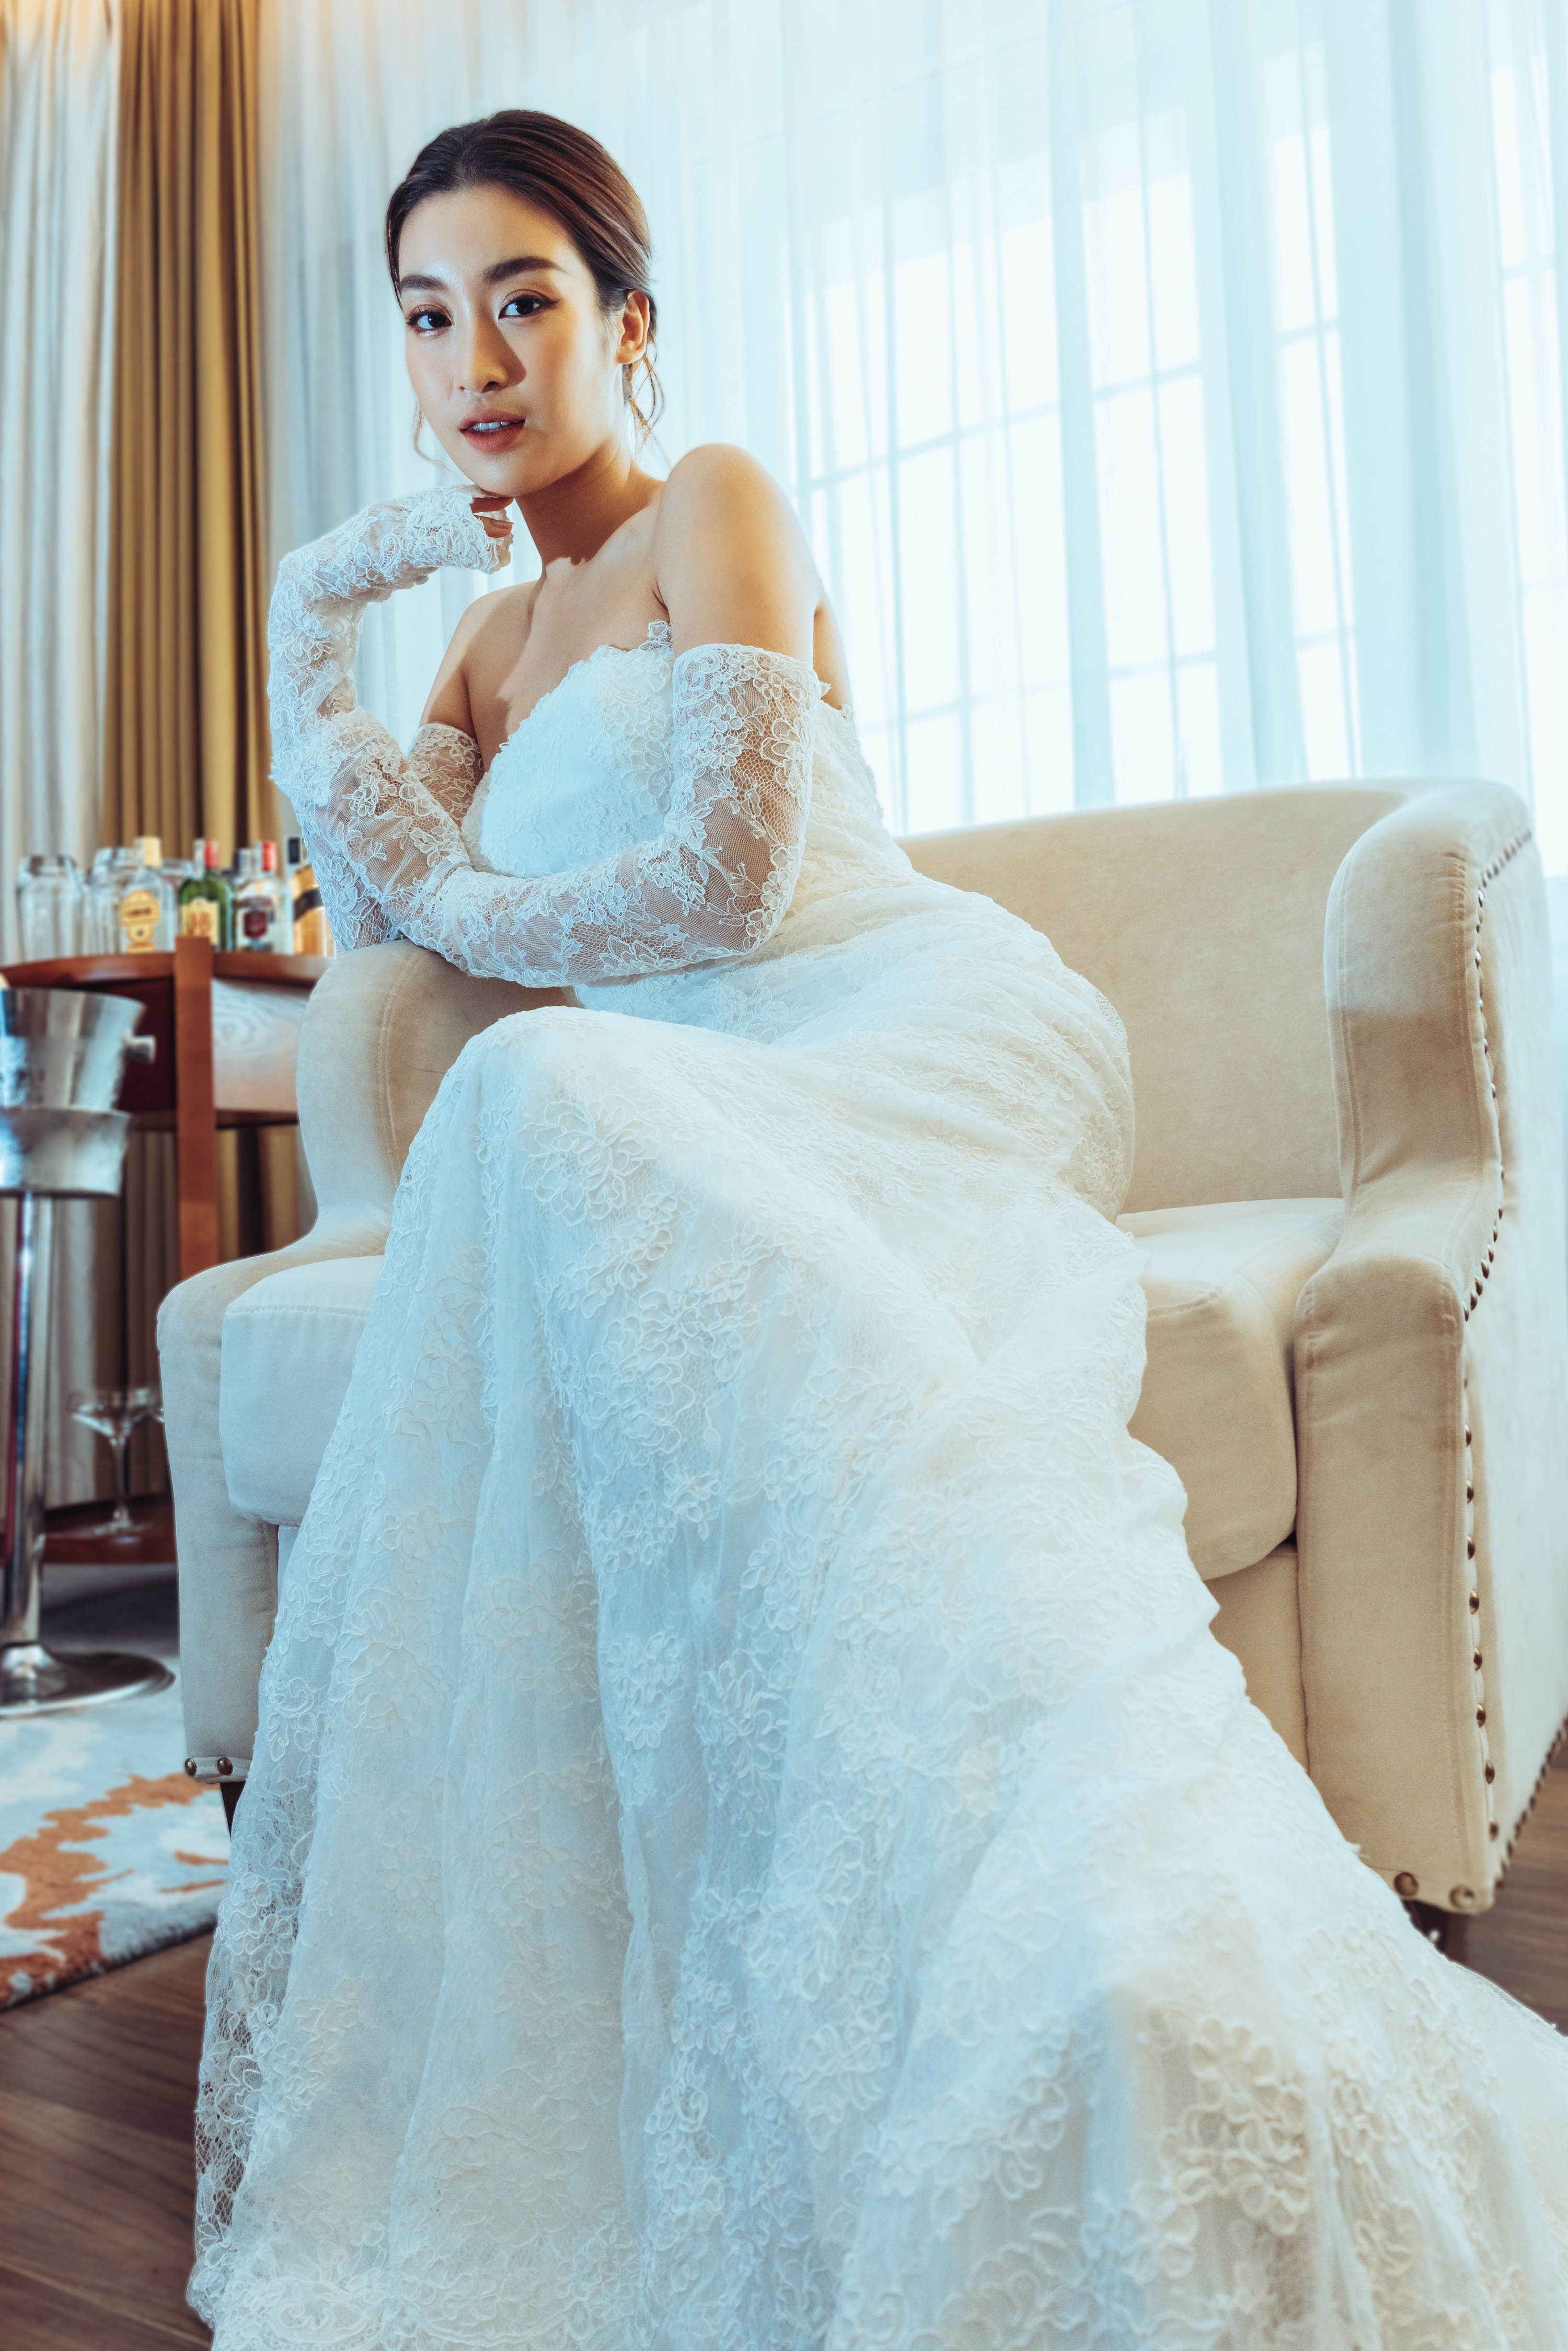 Lê Anh Wedding - GOTHIC WEDDING DRESS Các cô dâu cá tính... | Facebook